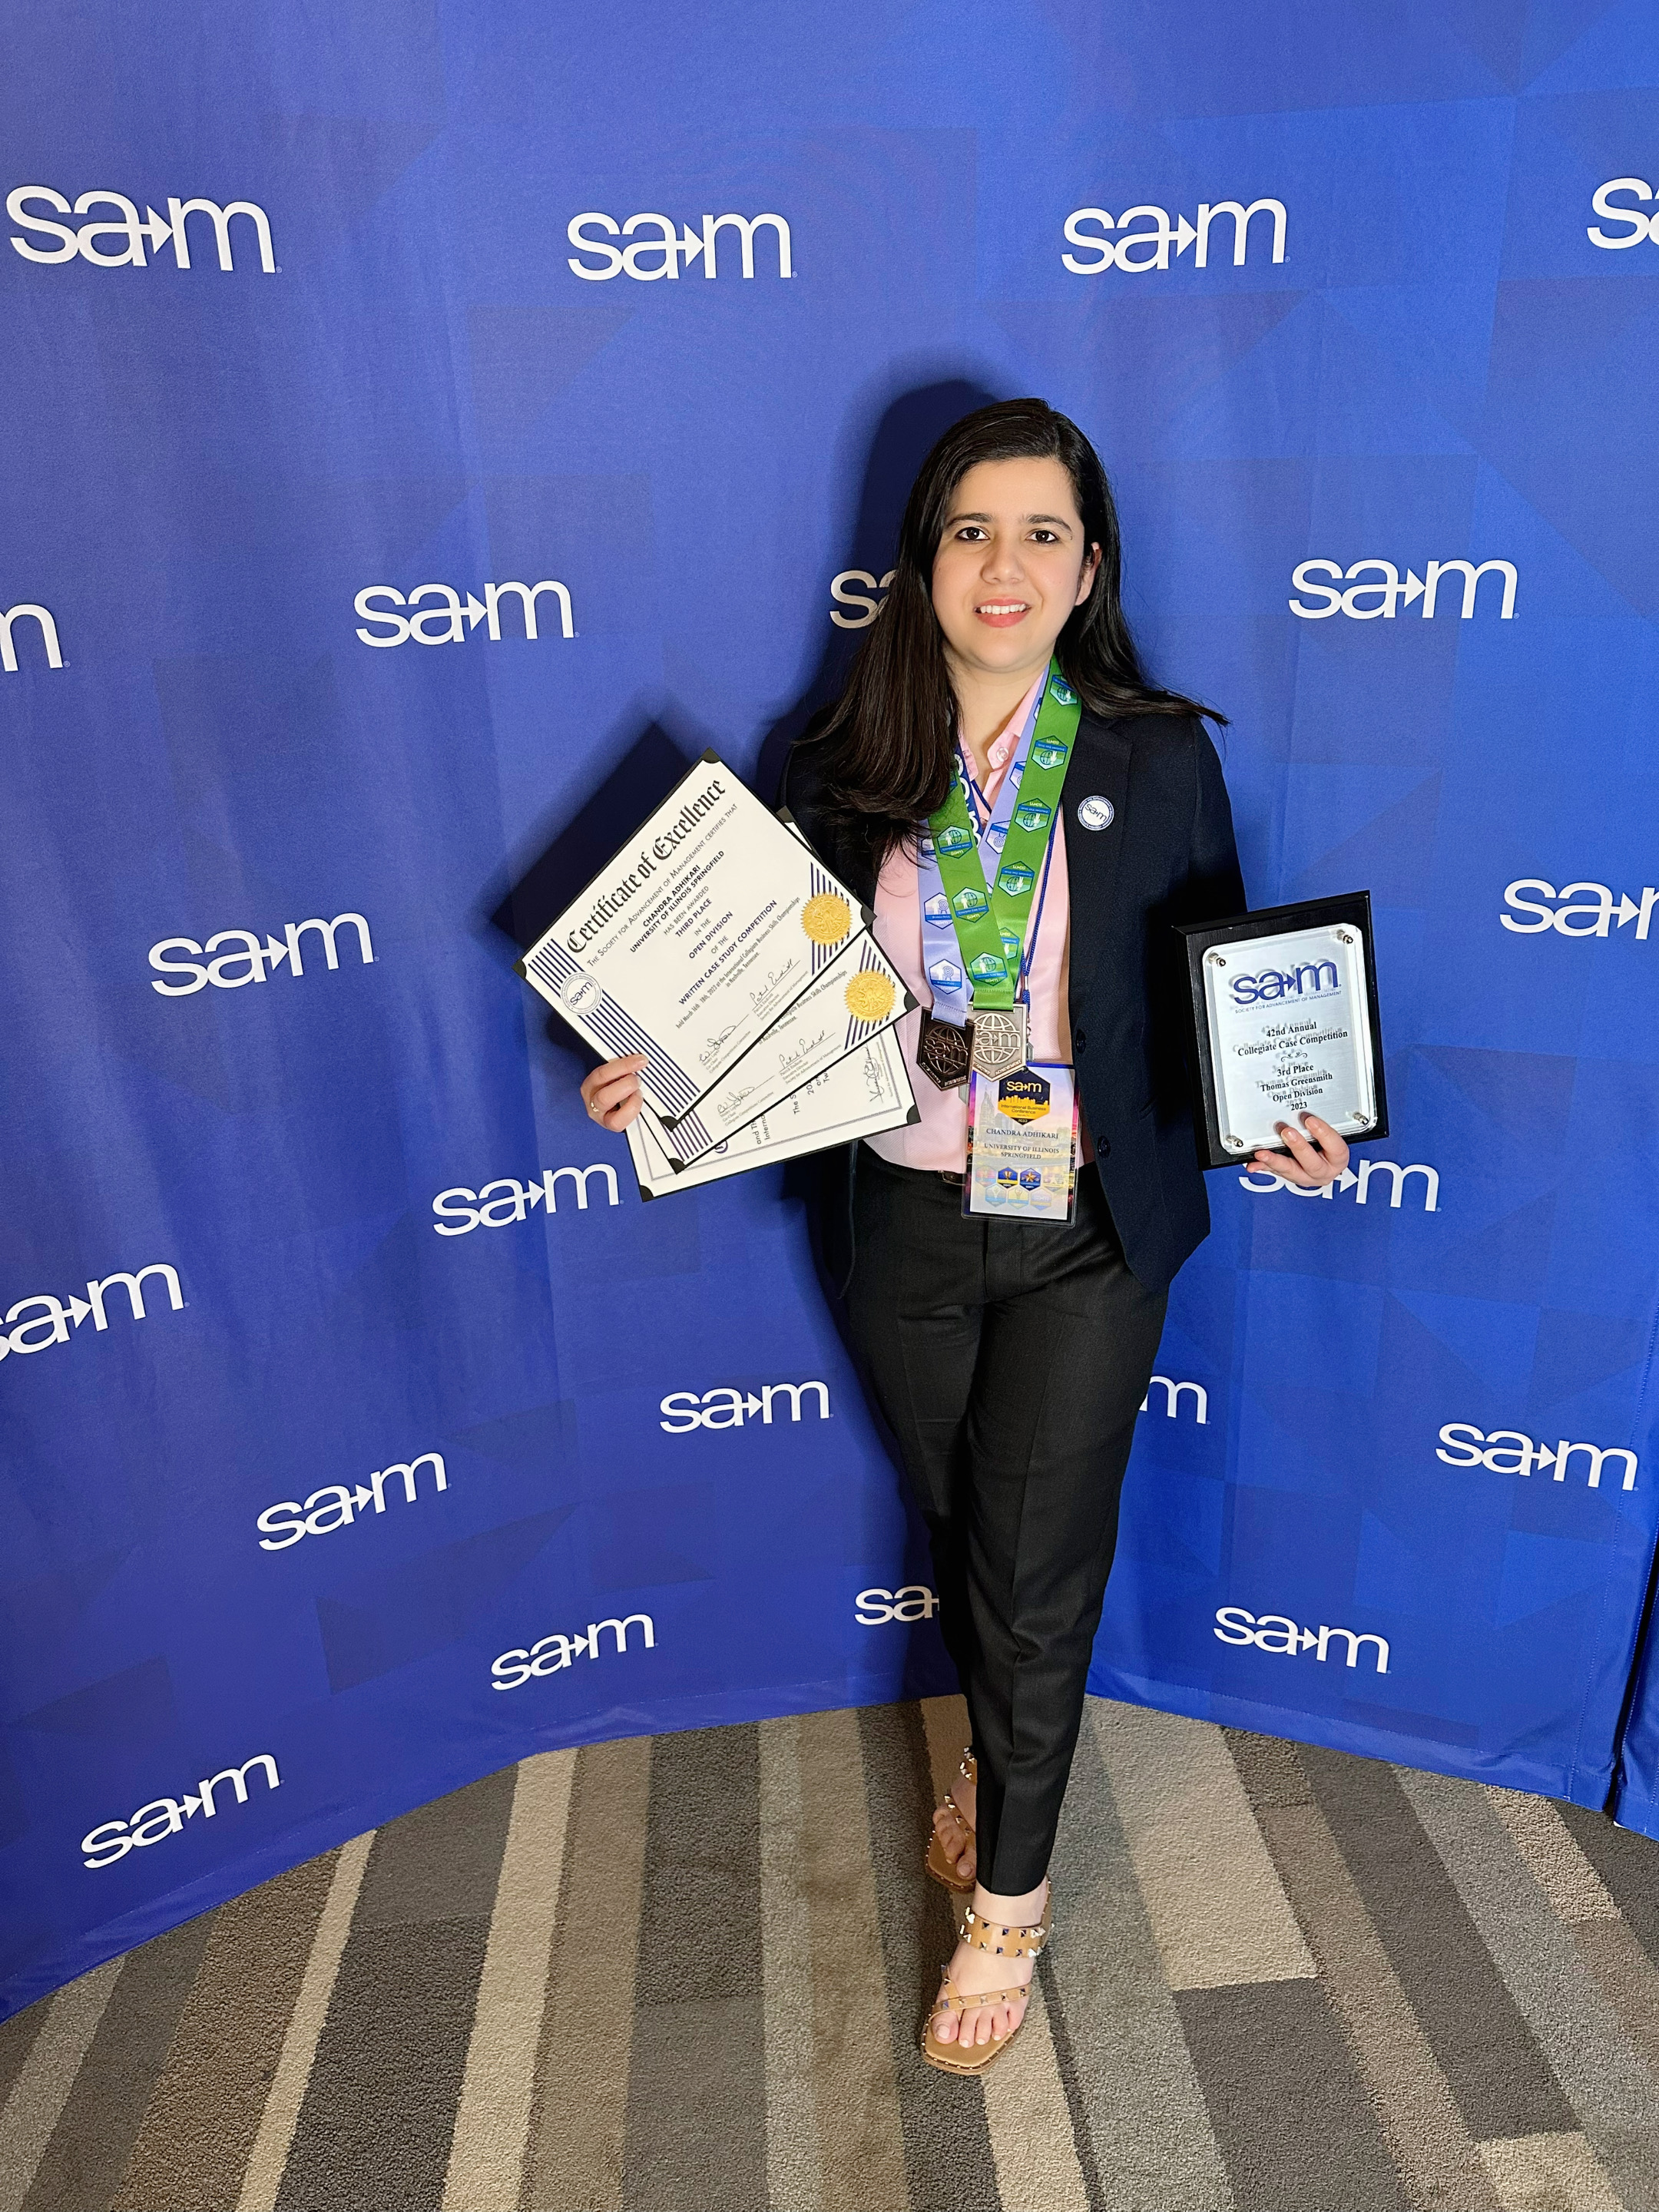 SAM student member holding her awards